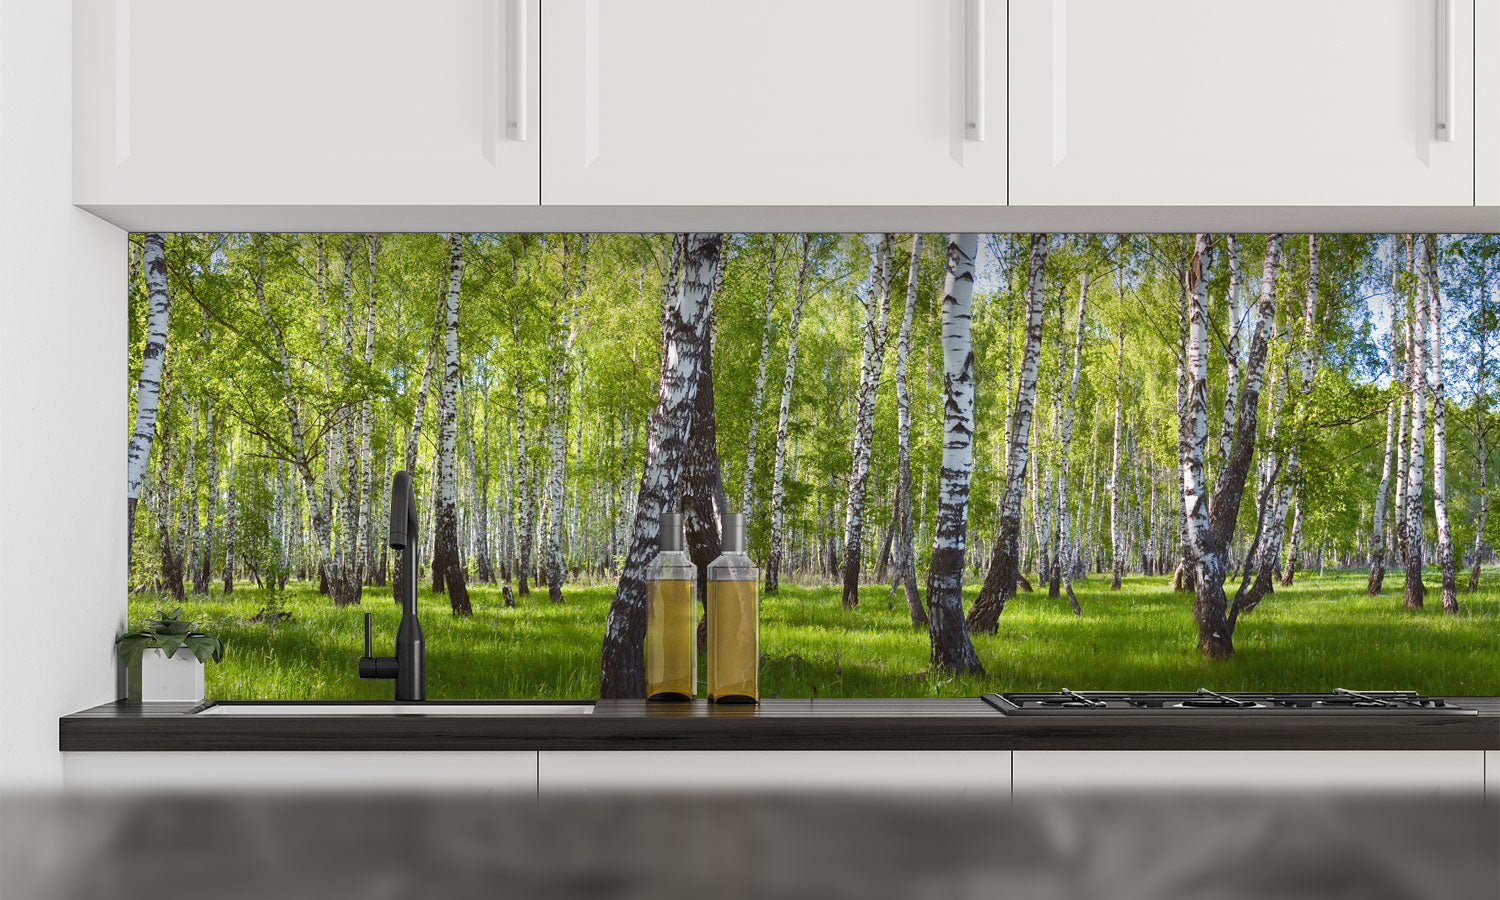 Kuhinjski paneli  Forest landscape - Stekleni / PVC plošče / Pleksi steklo - s tiskom za kuhinjo, Stenske obloge PKU020 - Life-decor.si